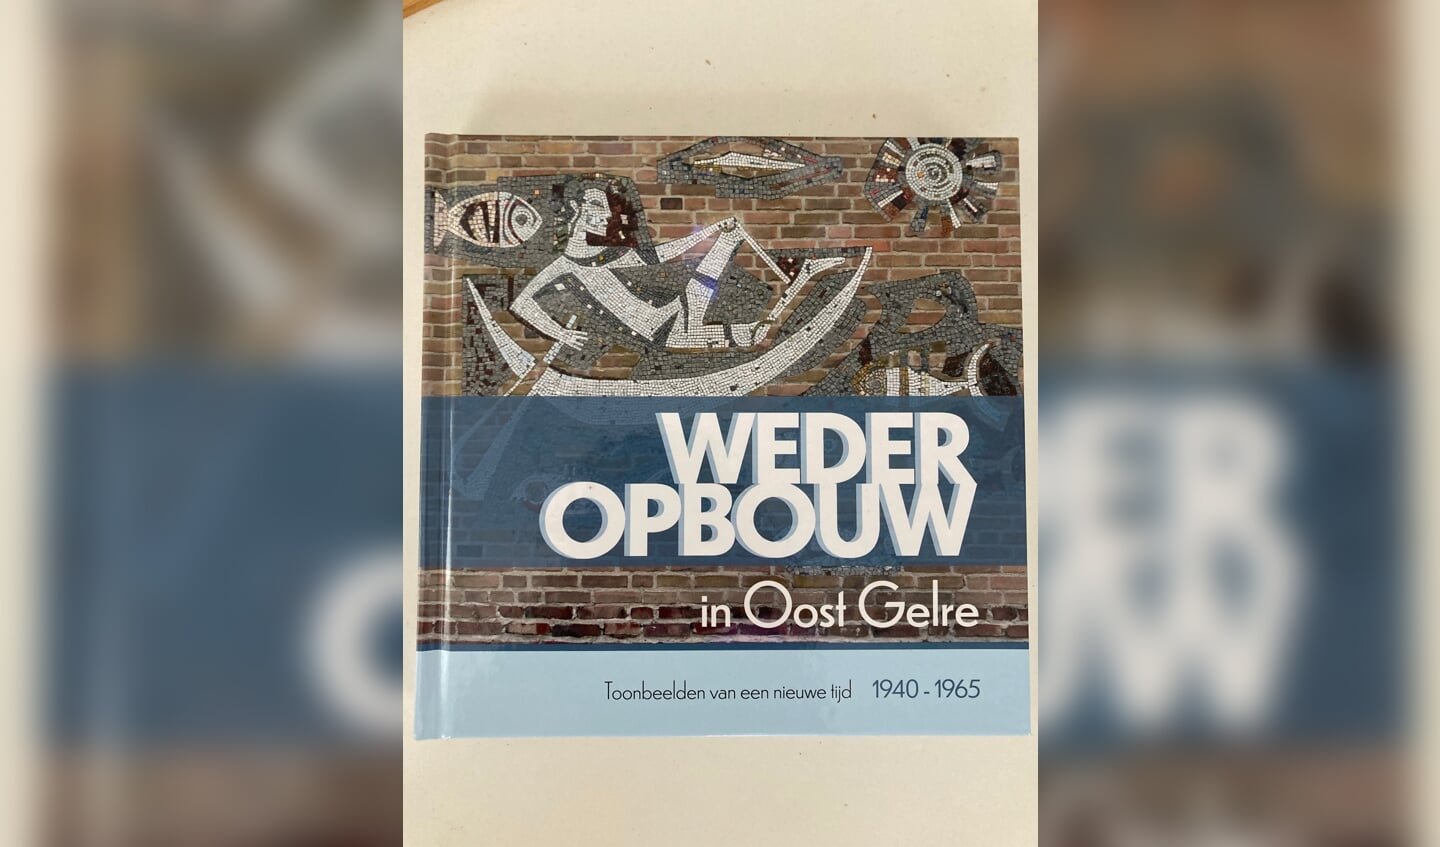 Boek Wederopbouw in Oost Gelre. Foto: archief OVZ